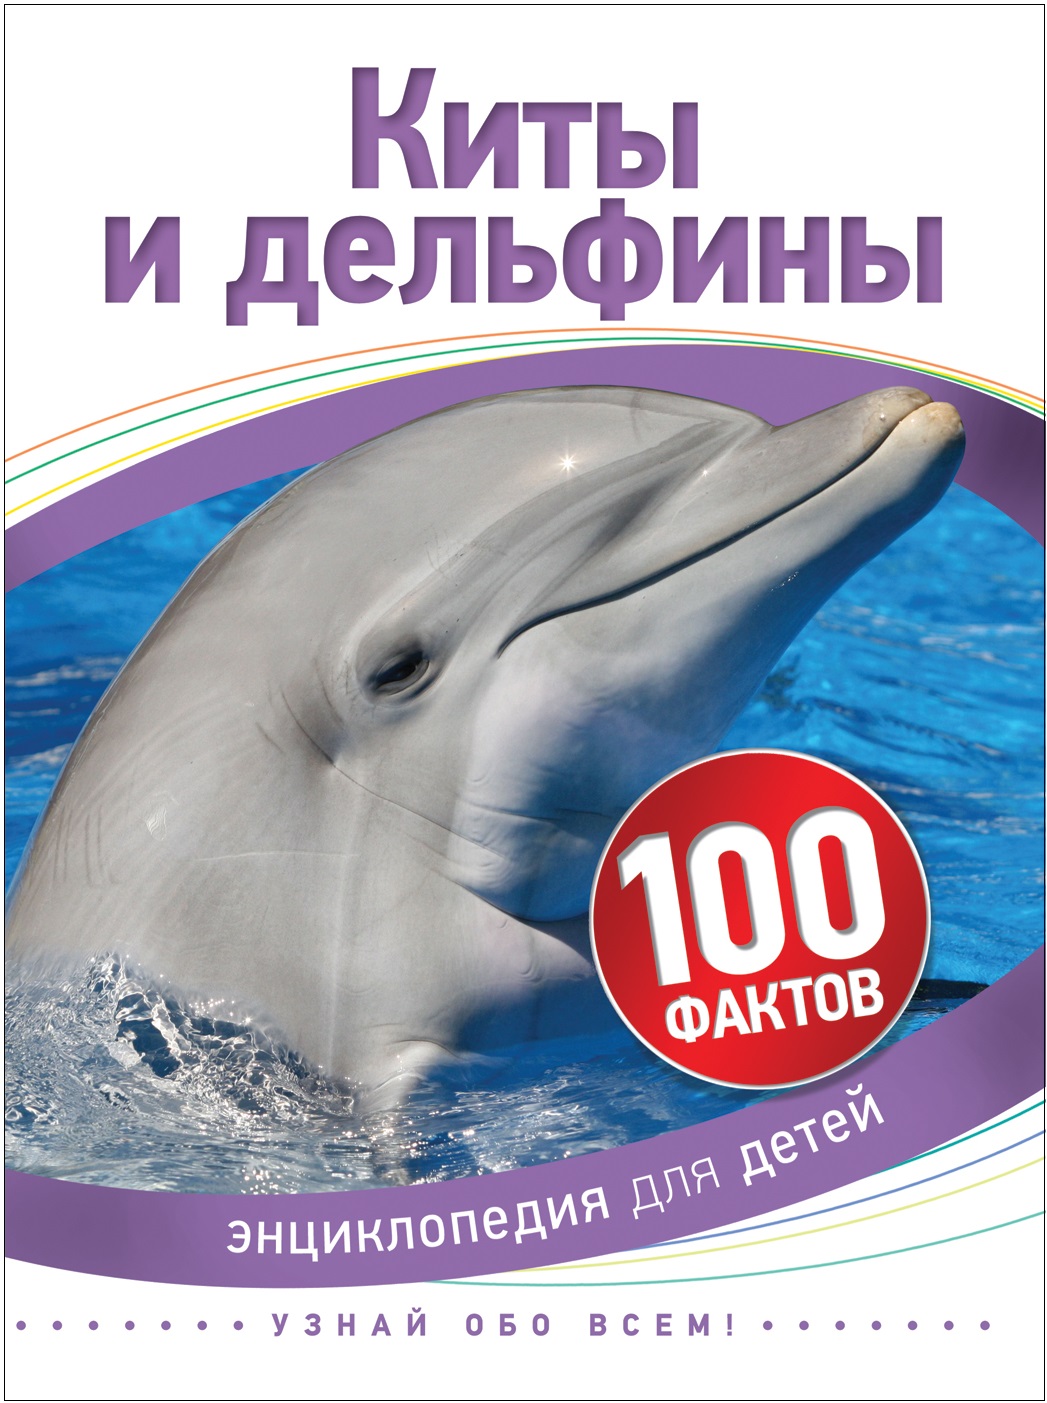 Книга 35069 "Киты и дельфины" 100 фактов Росмэн